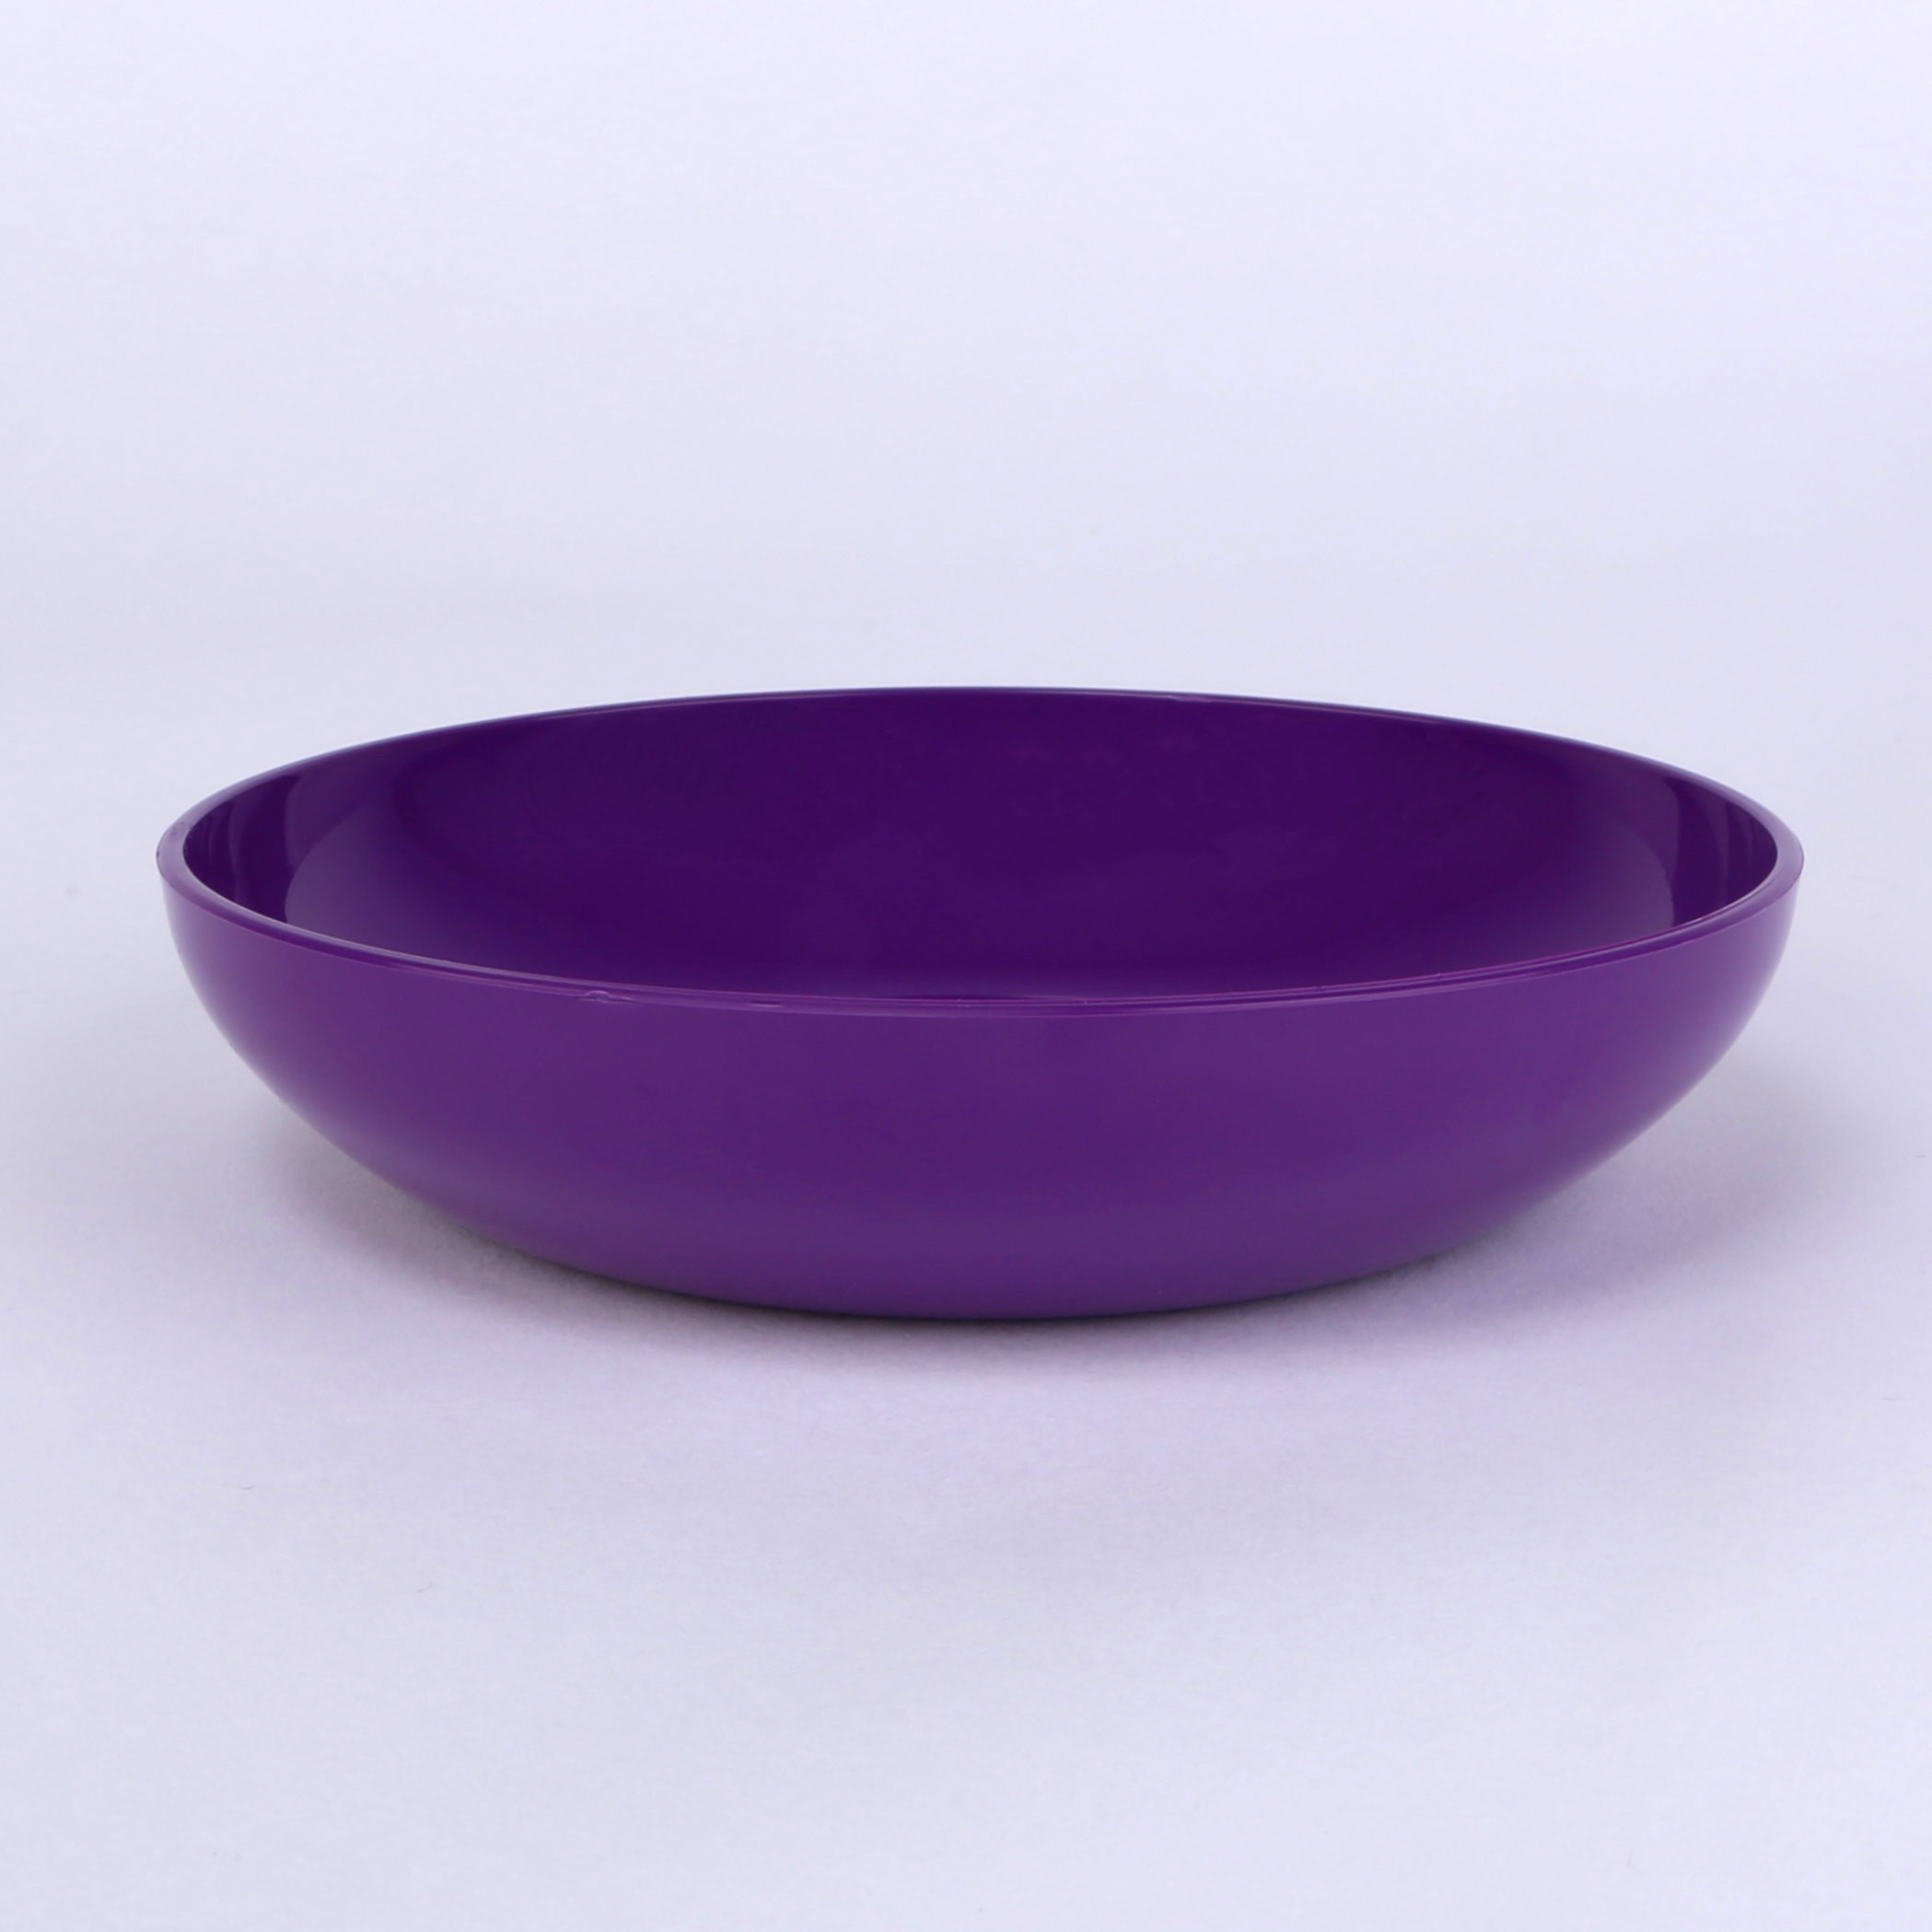 vaLon Flache Dessertschale13,5 cm aus schadstofffreiem Kunststoff in der Farbe lila.